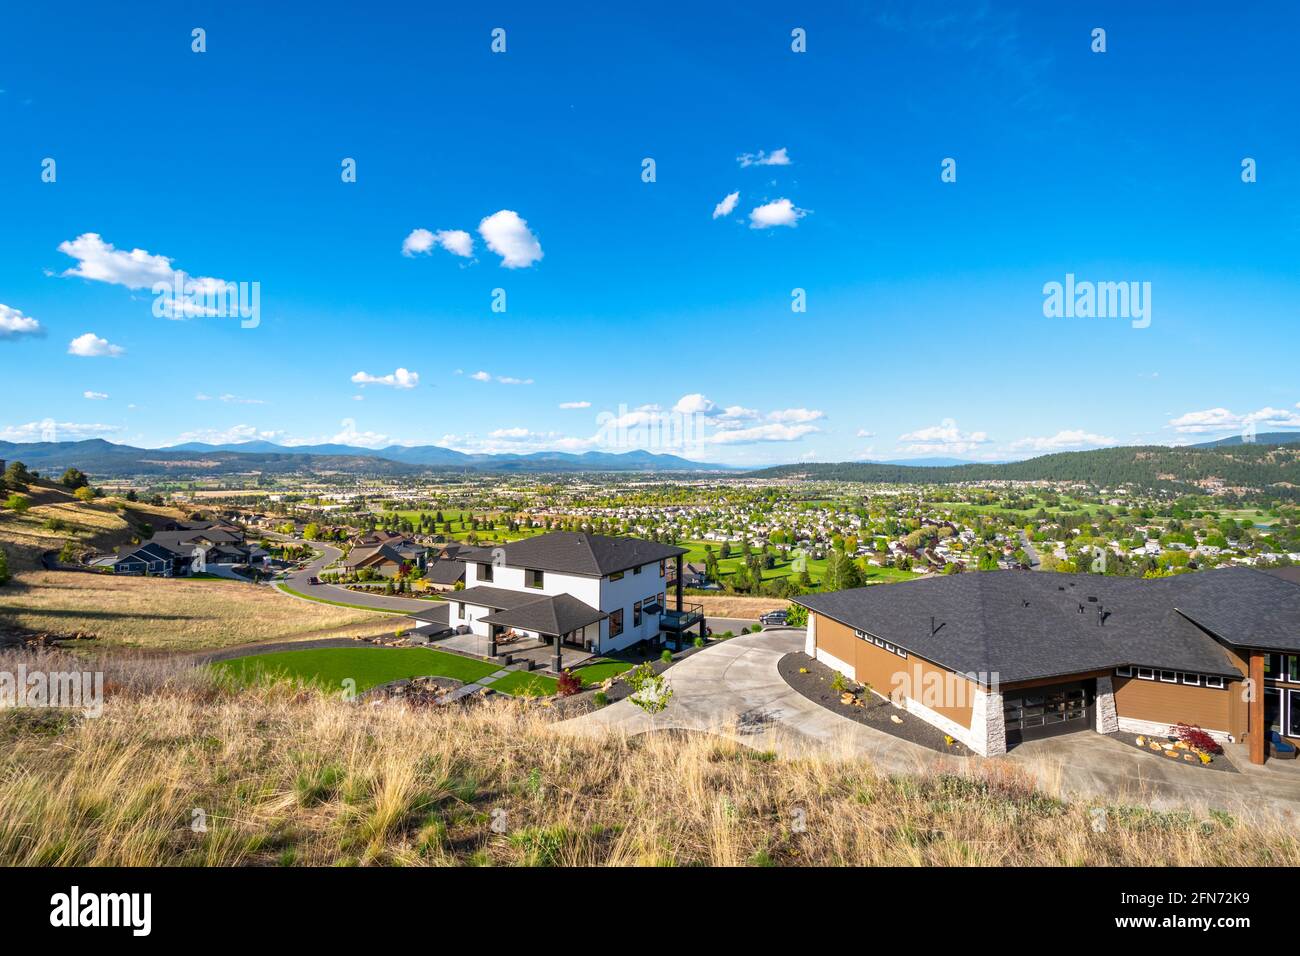 Las casas de lujo en la cima de la colina tienen vistas a las ciudades de Liberty Lake, Spokane Valley y Newman Lake, Washington, Estados Unidos Foto de stock